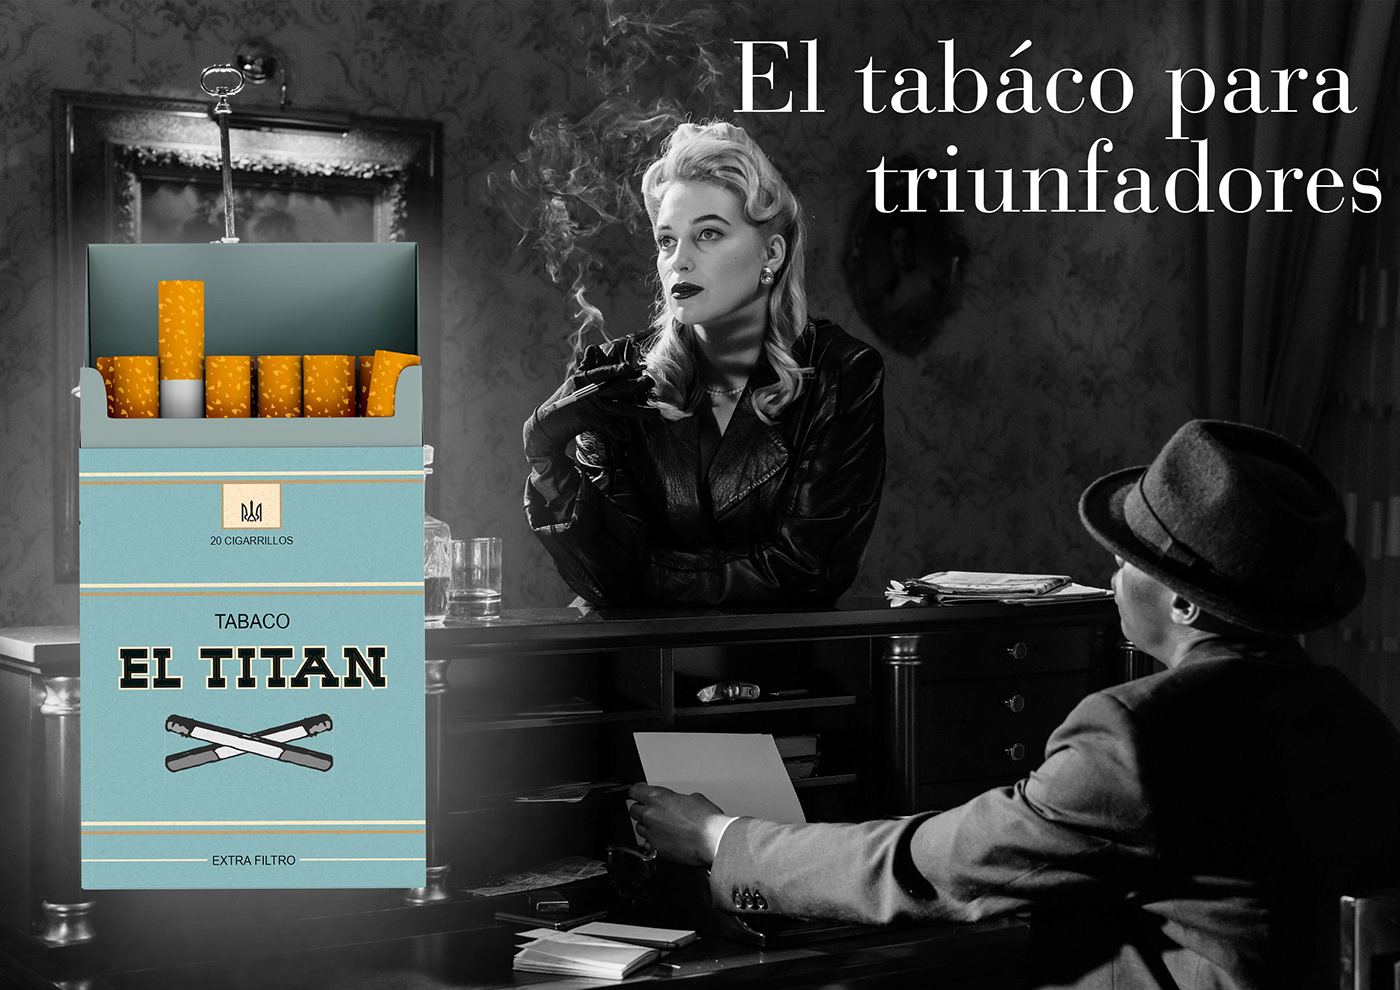 50s cartel cigarette diseño publicidad Retro smoke tabaco vintage woman